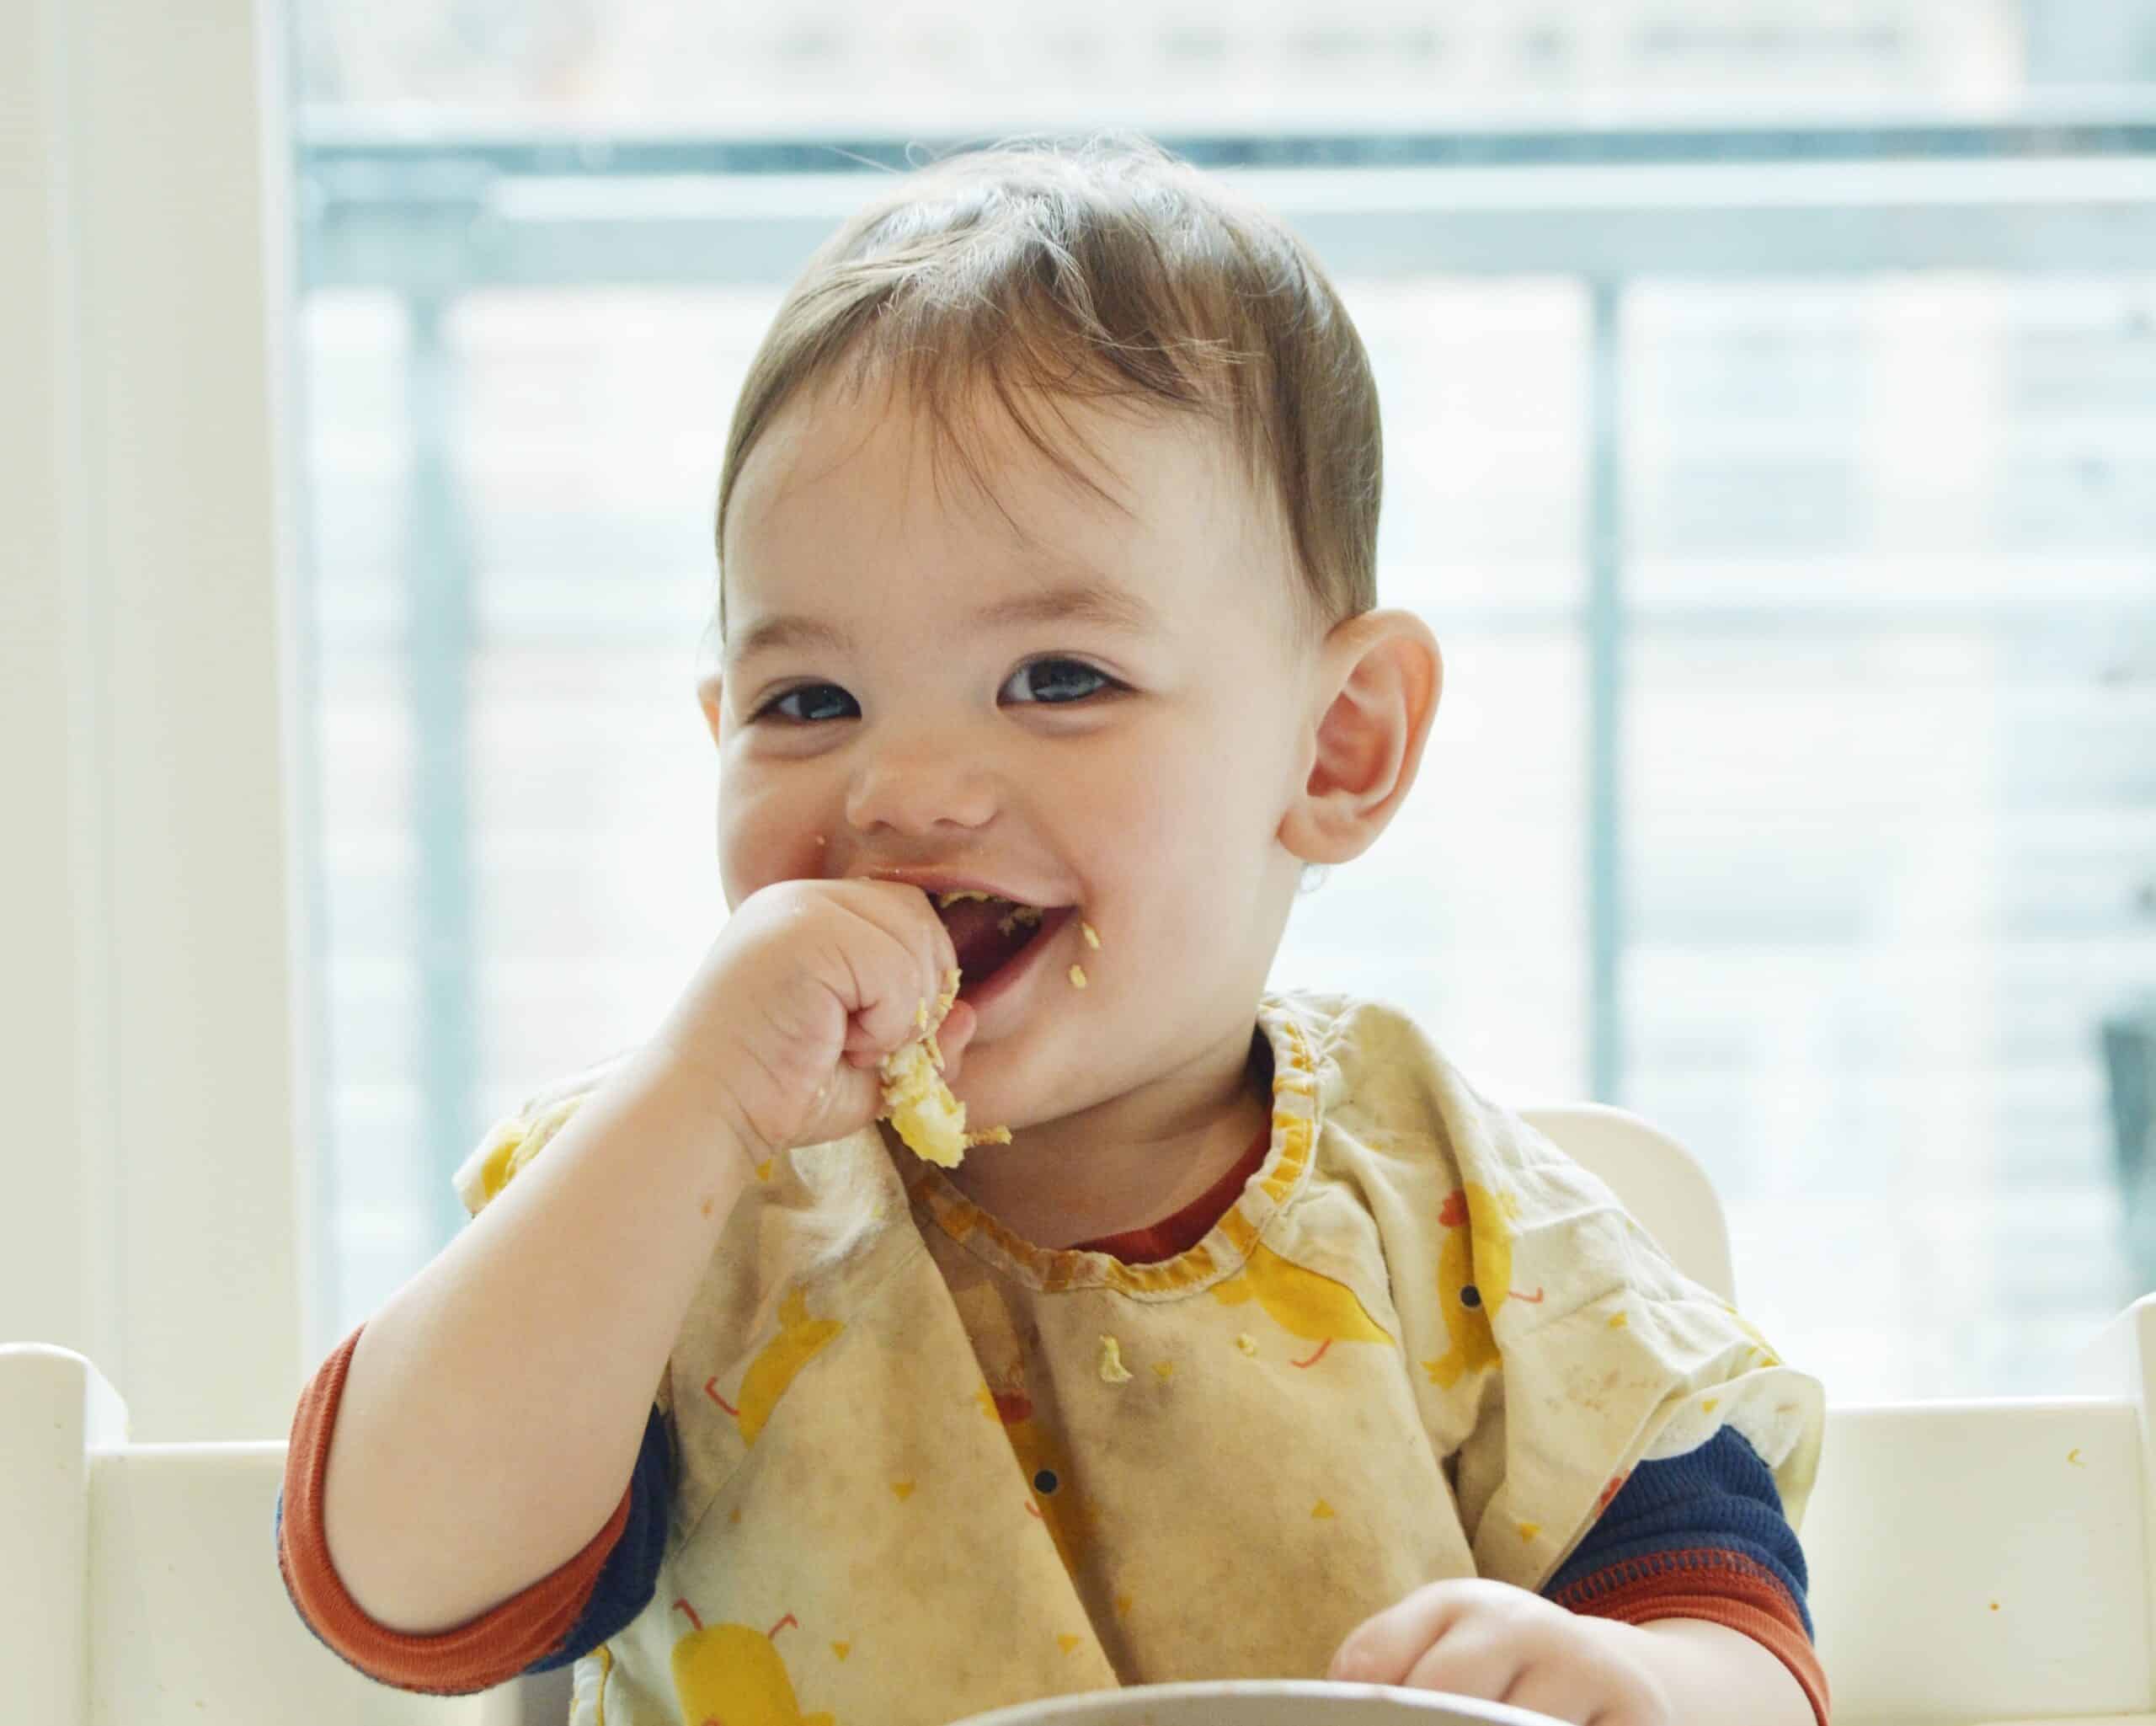 El porqué detrás de ‘bocados para bebés’ (Finger Food First, en inglés)